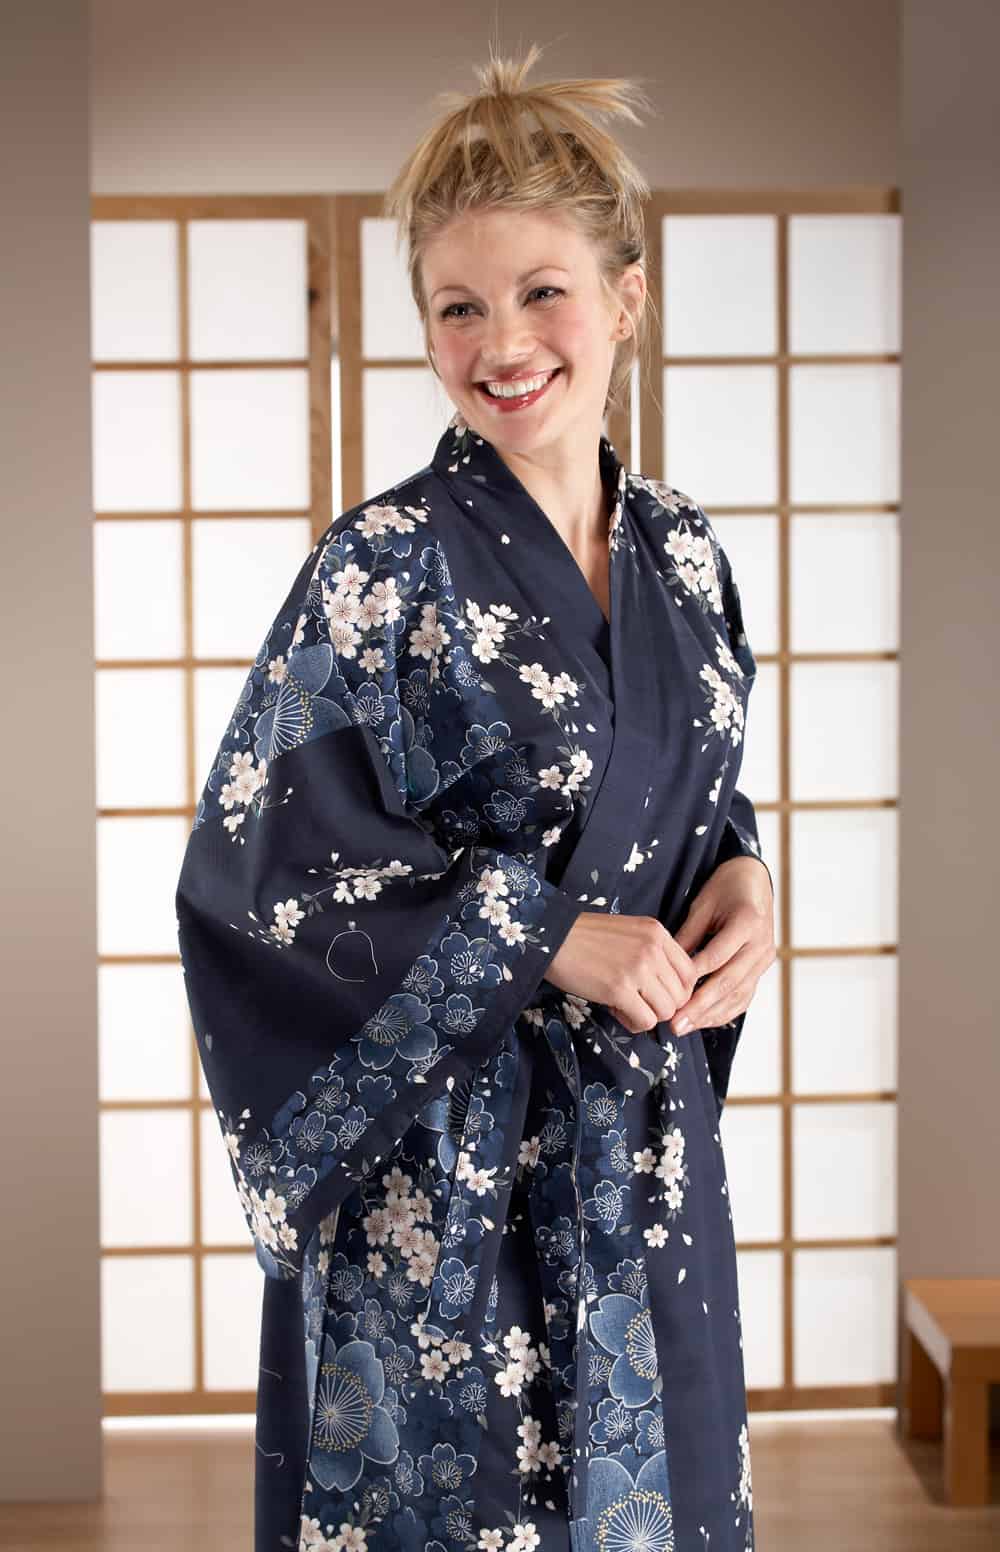 Men's and women's yukata: a comparison : r/kimono